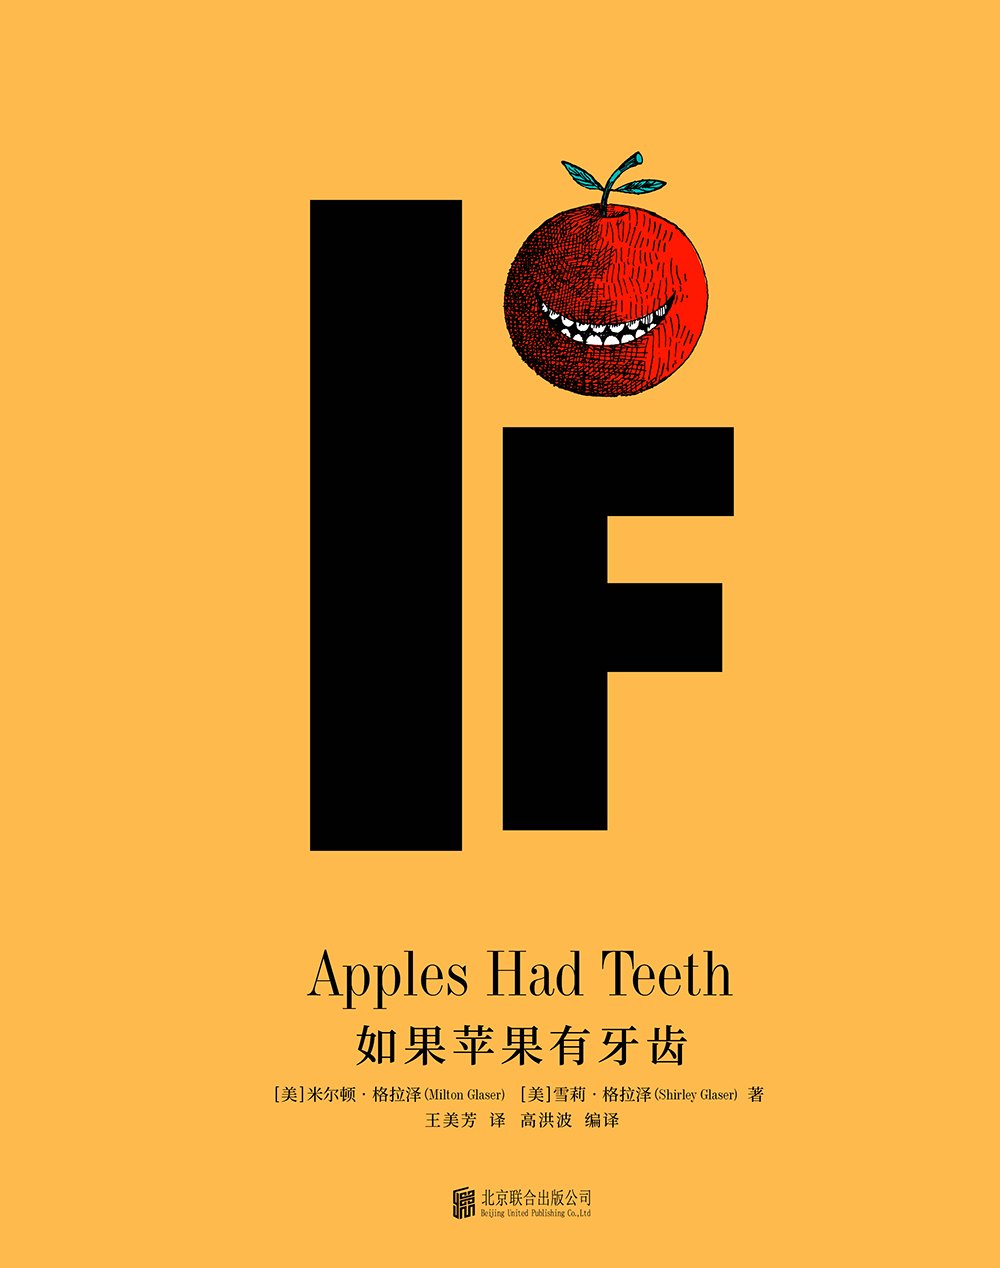 如果蘋果有牙齒